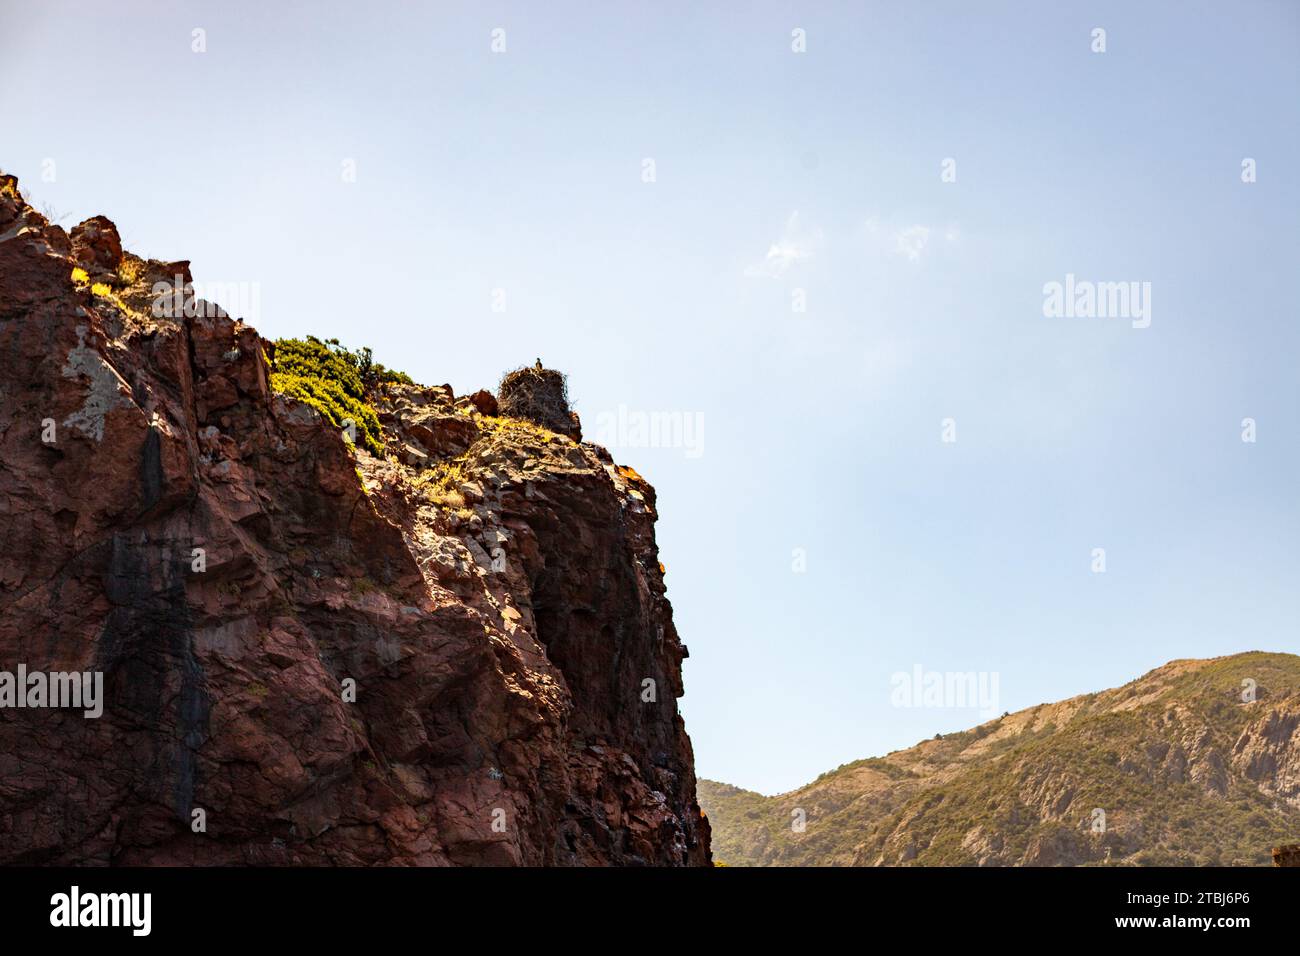 NID d'aigle au sommet d'un rocher, Corsica, Francia Foto Stock